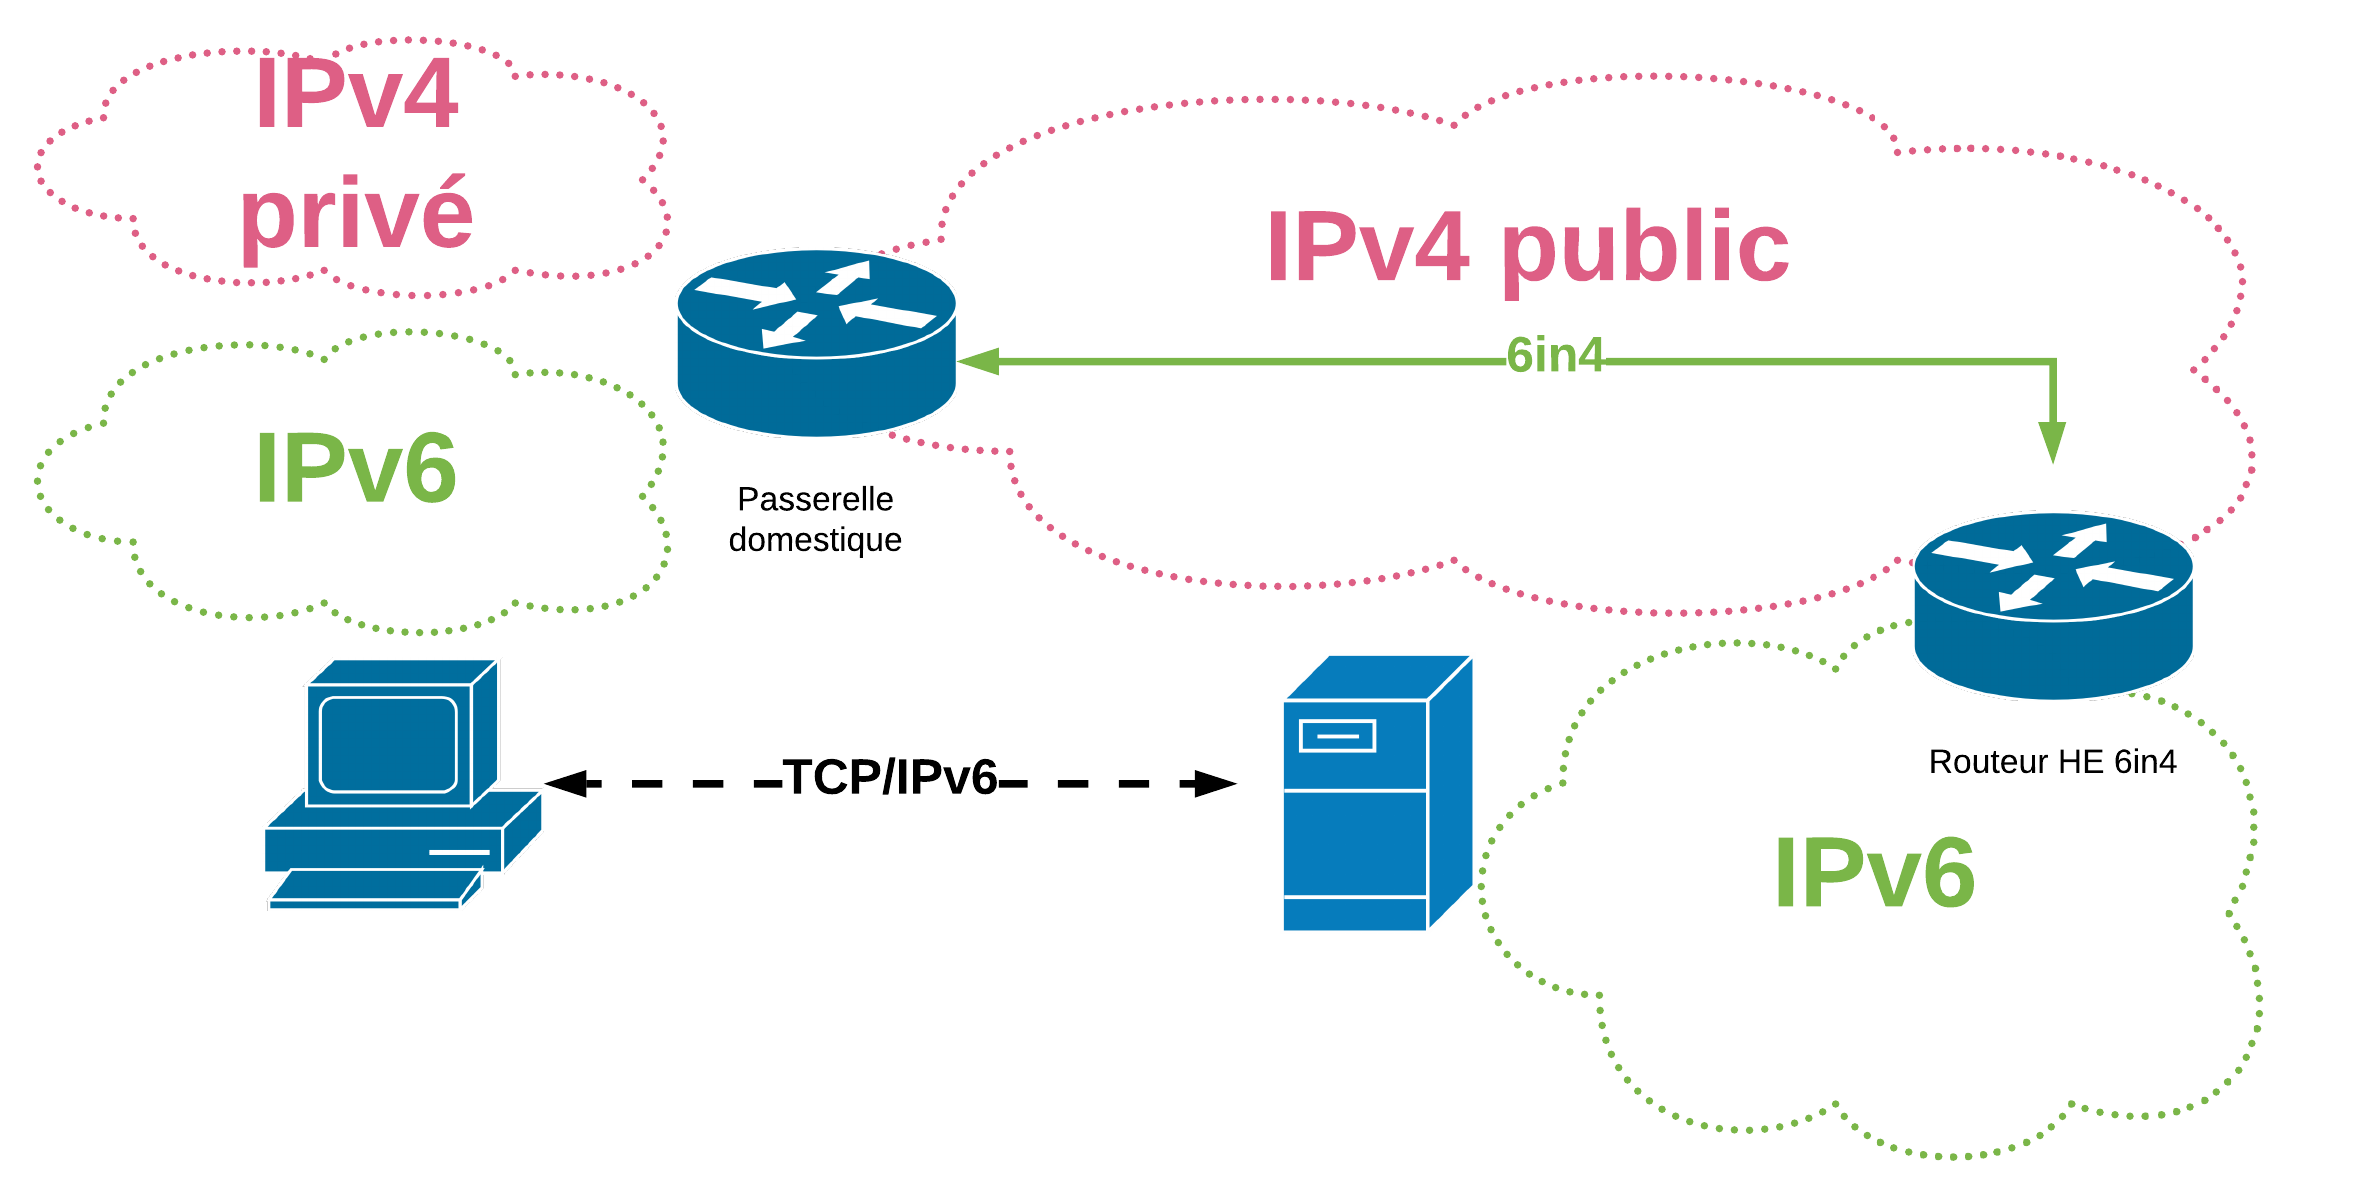 Ipv4 компьютера. Туннелирование ipv4 к ipv6. Сравнение ipv4 и ipv6. Двойной стек ipv4 и ipv6. Протоколы ipv4 и ipv6 и их структуры пакетов. Pptx.